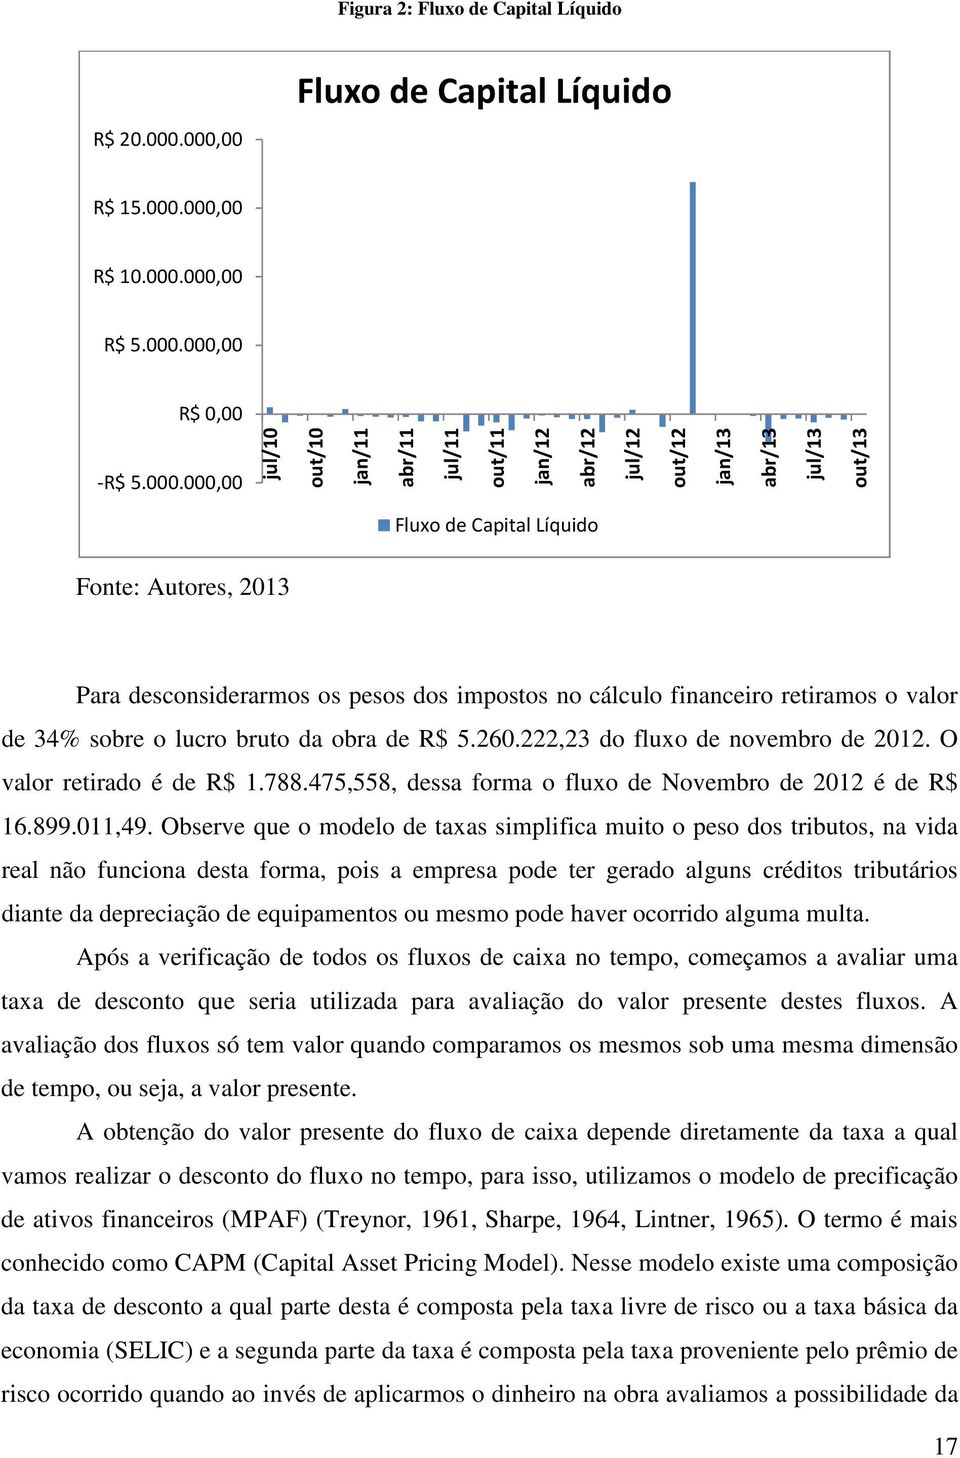 out/13 Fluxo de Capital Líquido Fonte: Autores, 2013 Para desconsiderarmos os pesos dos impostos no cálculo financeiro retiramos o valor de 34% sobre o lucro bruto da obra de R$ 5.260.